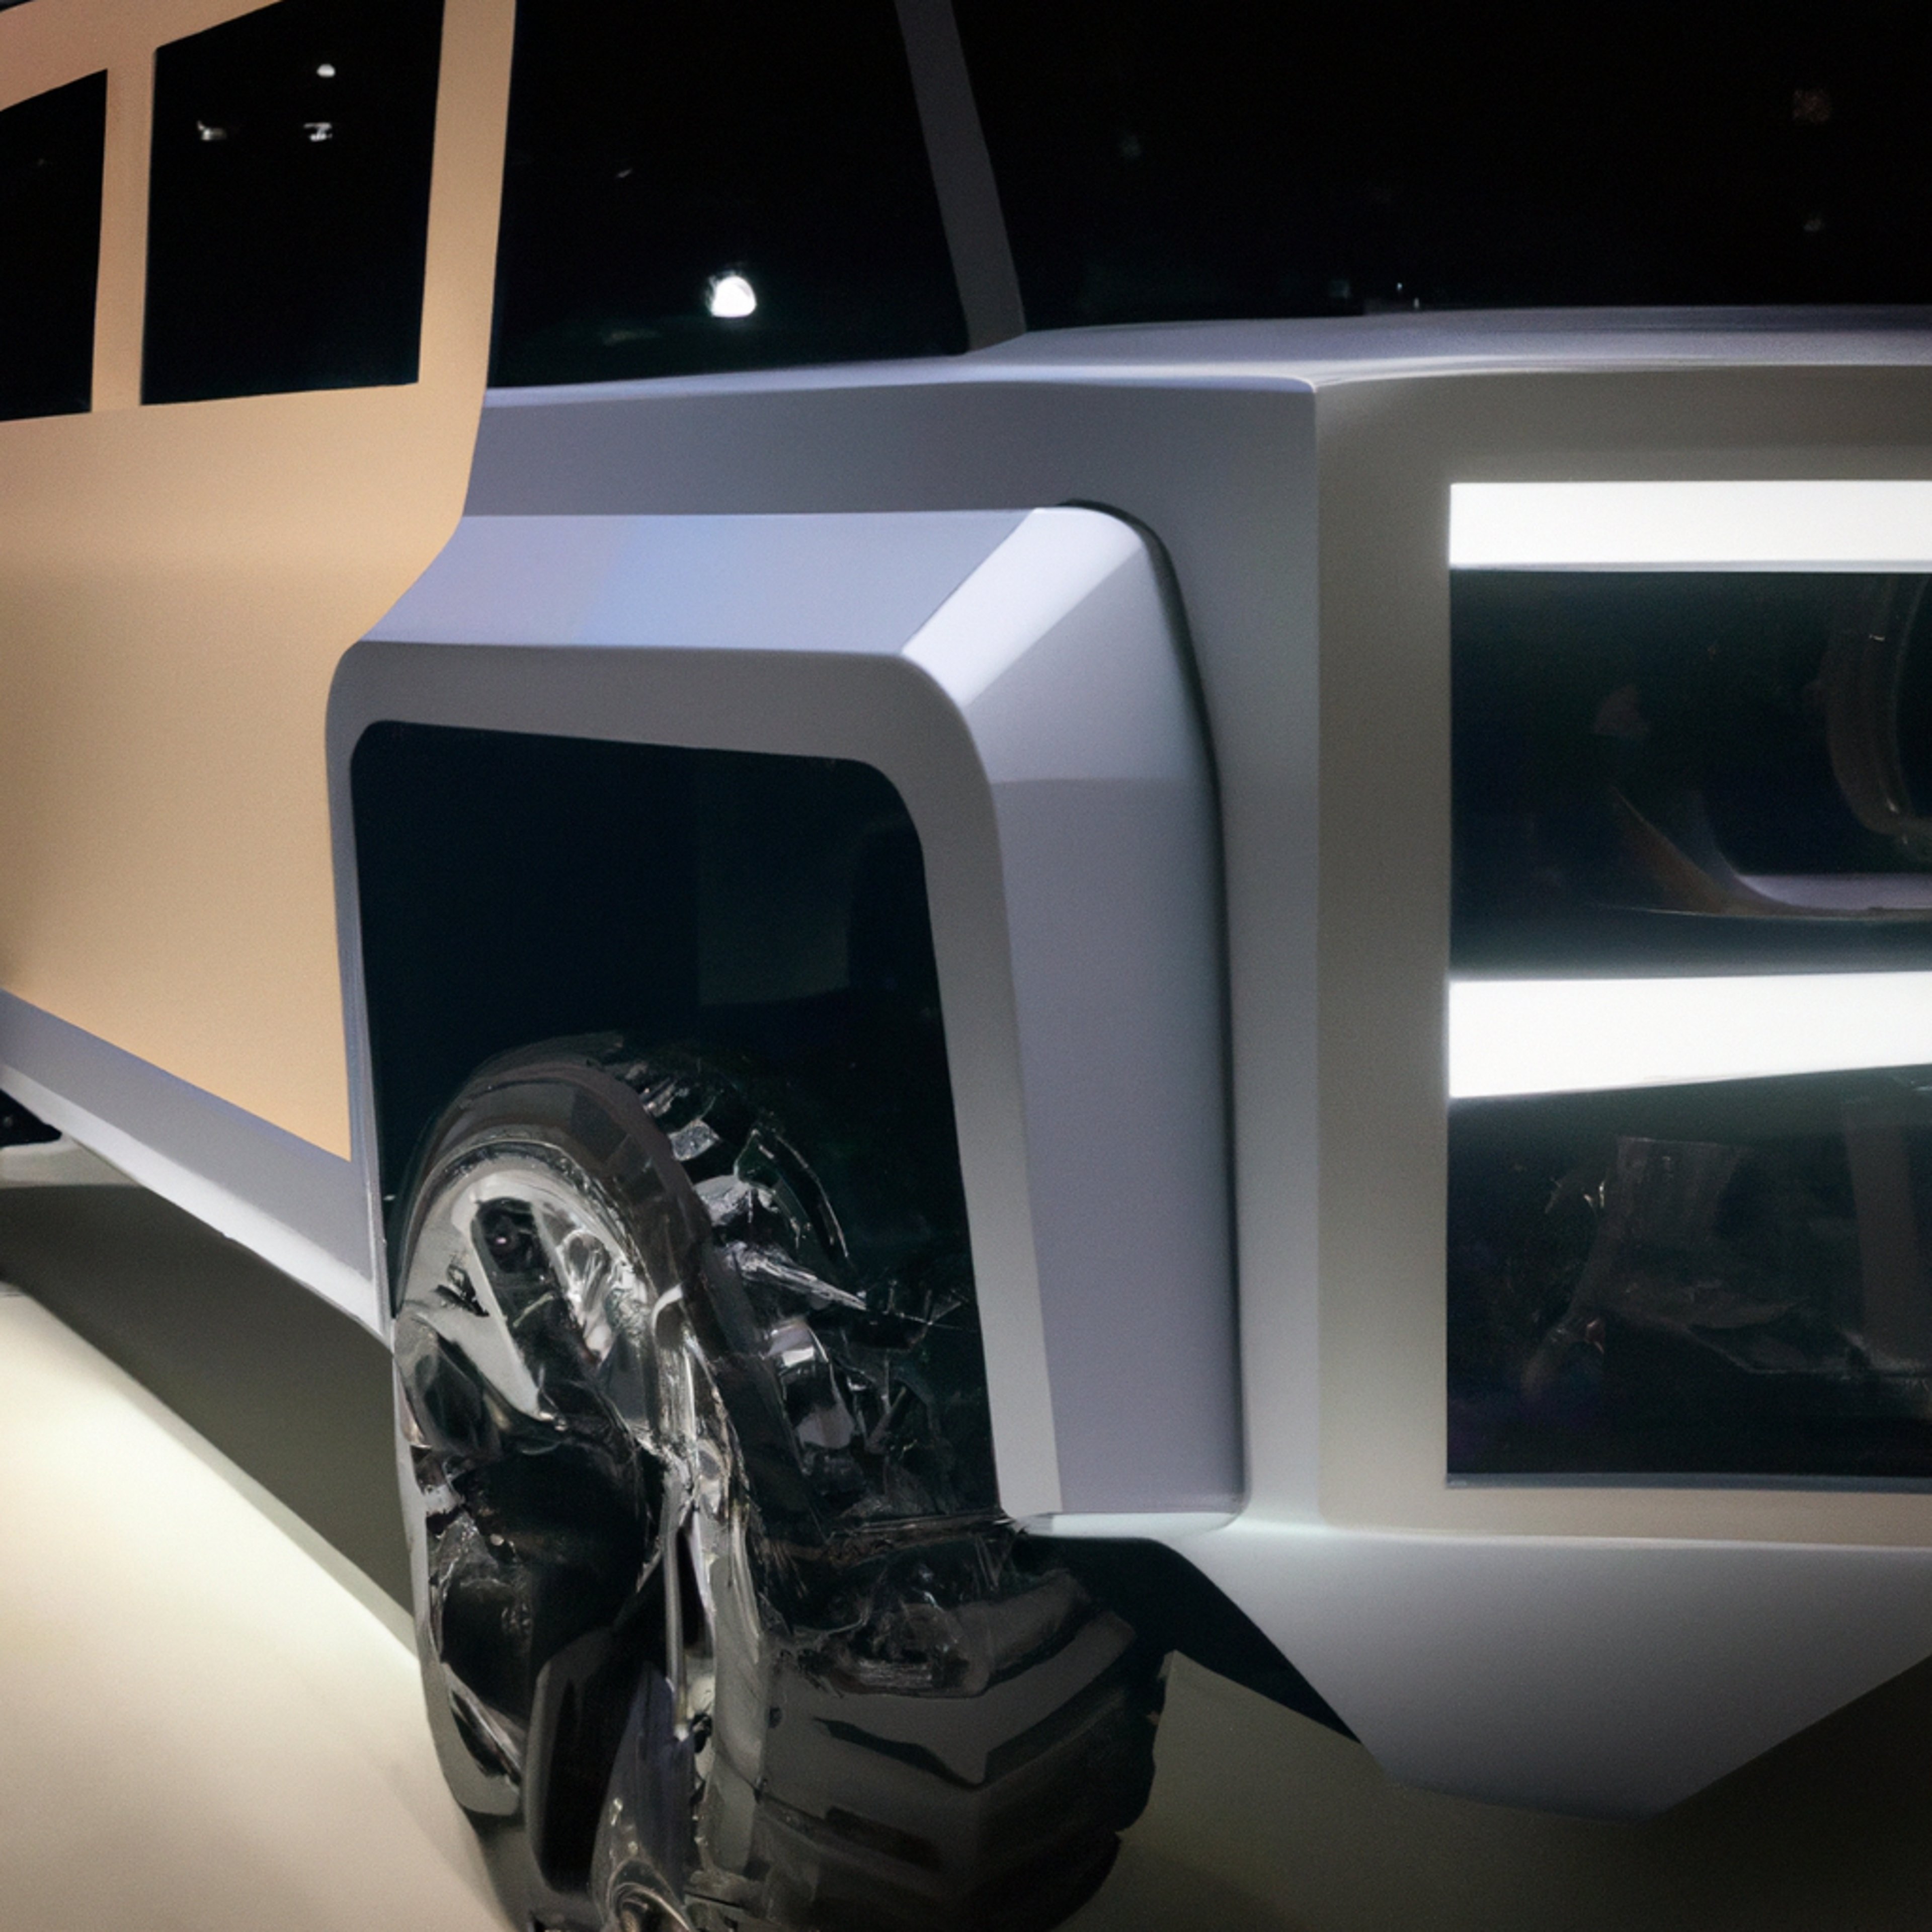 GMC Teases New Hummer EV Overlander Concept-Vehicle